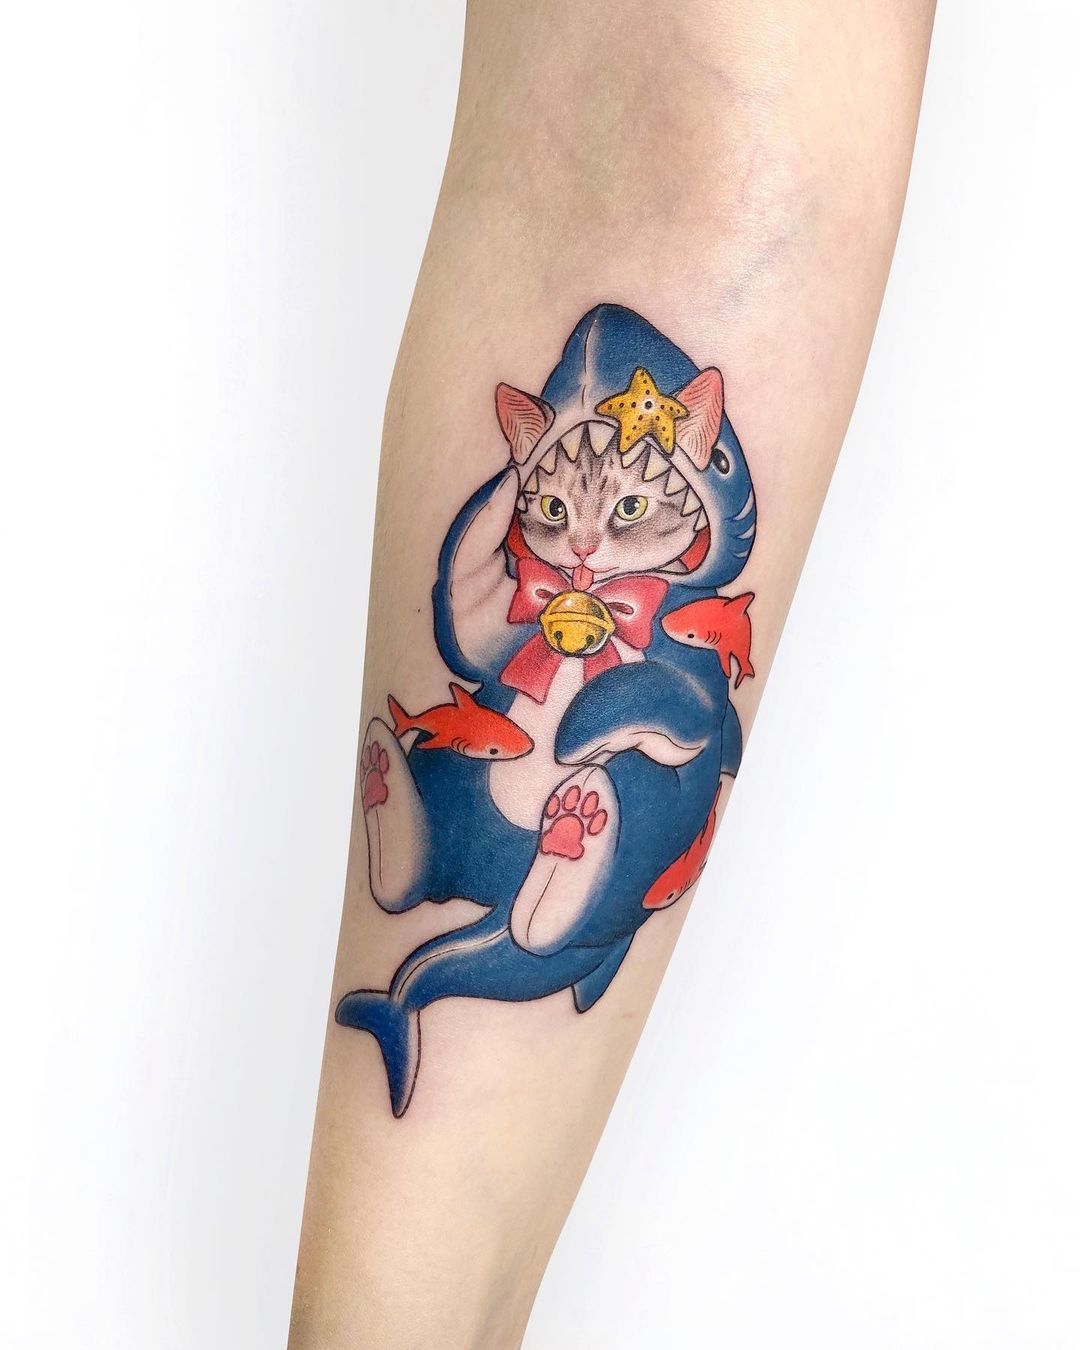 18. A Cat In A Sharks Costume Tattoo Design